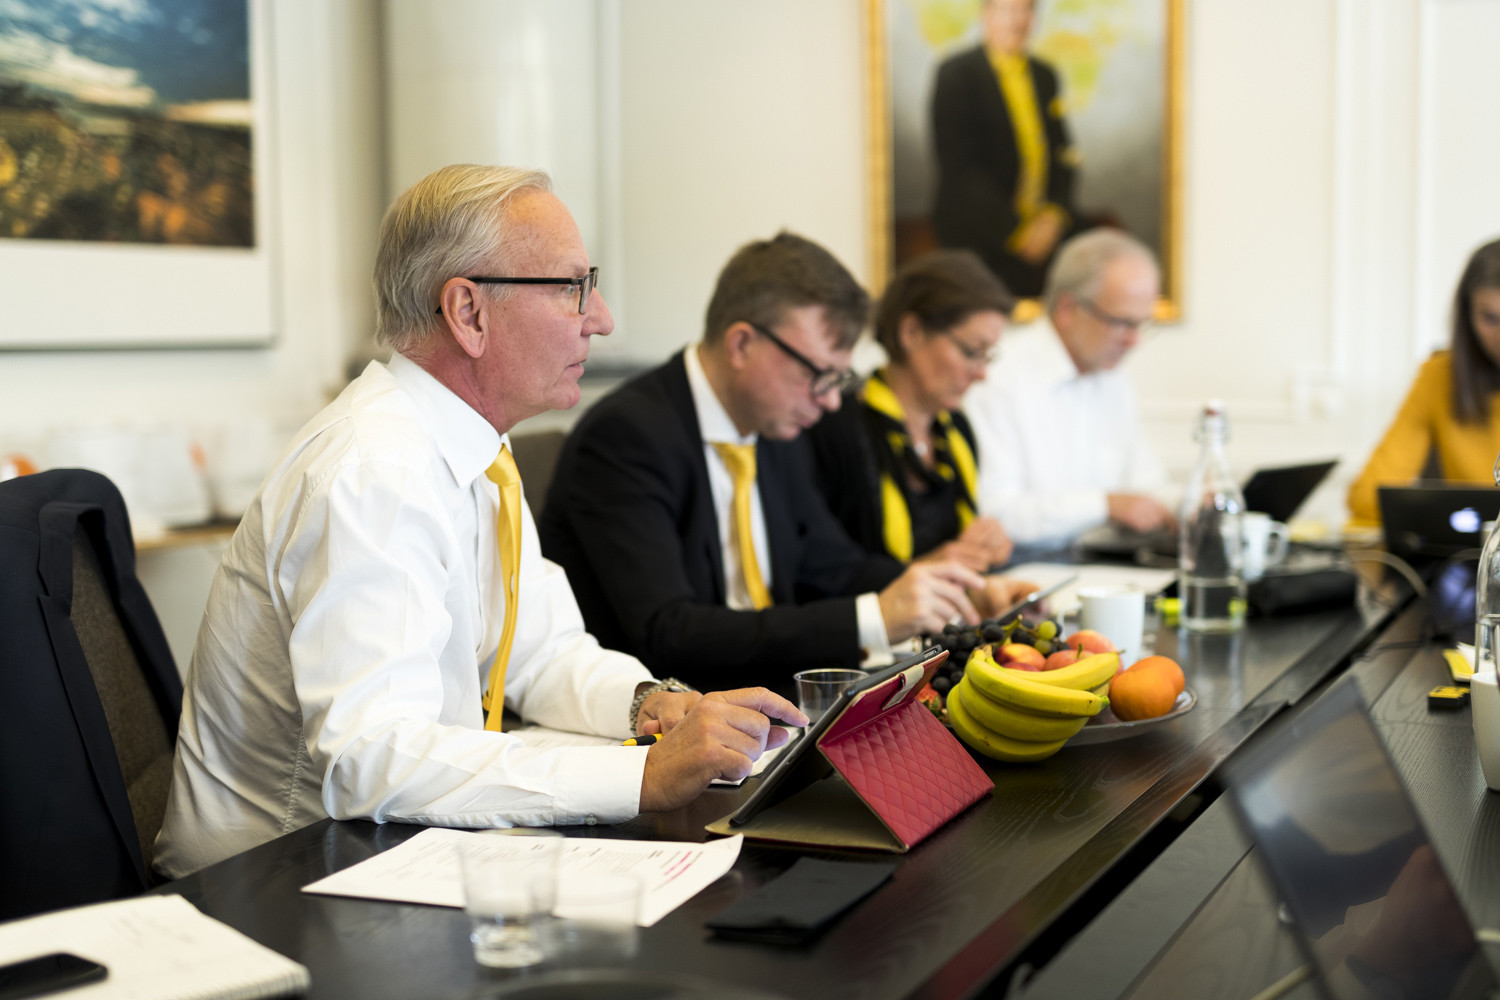 Affärsmöte med fokus på en man i förgrunden som deltar i en diskussion, med kollegor i bakgrunden vid ett konferensbord med tekniska enheter och fruktskål.